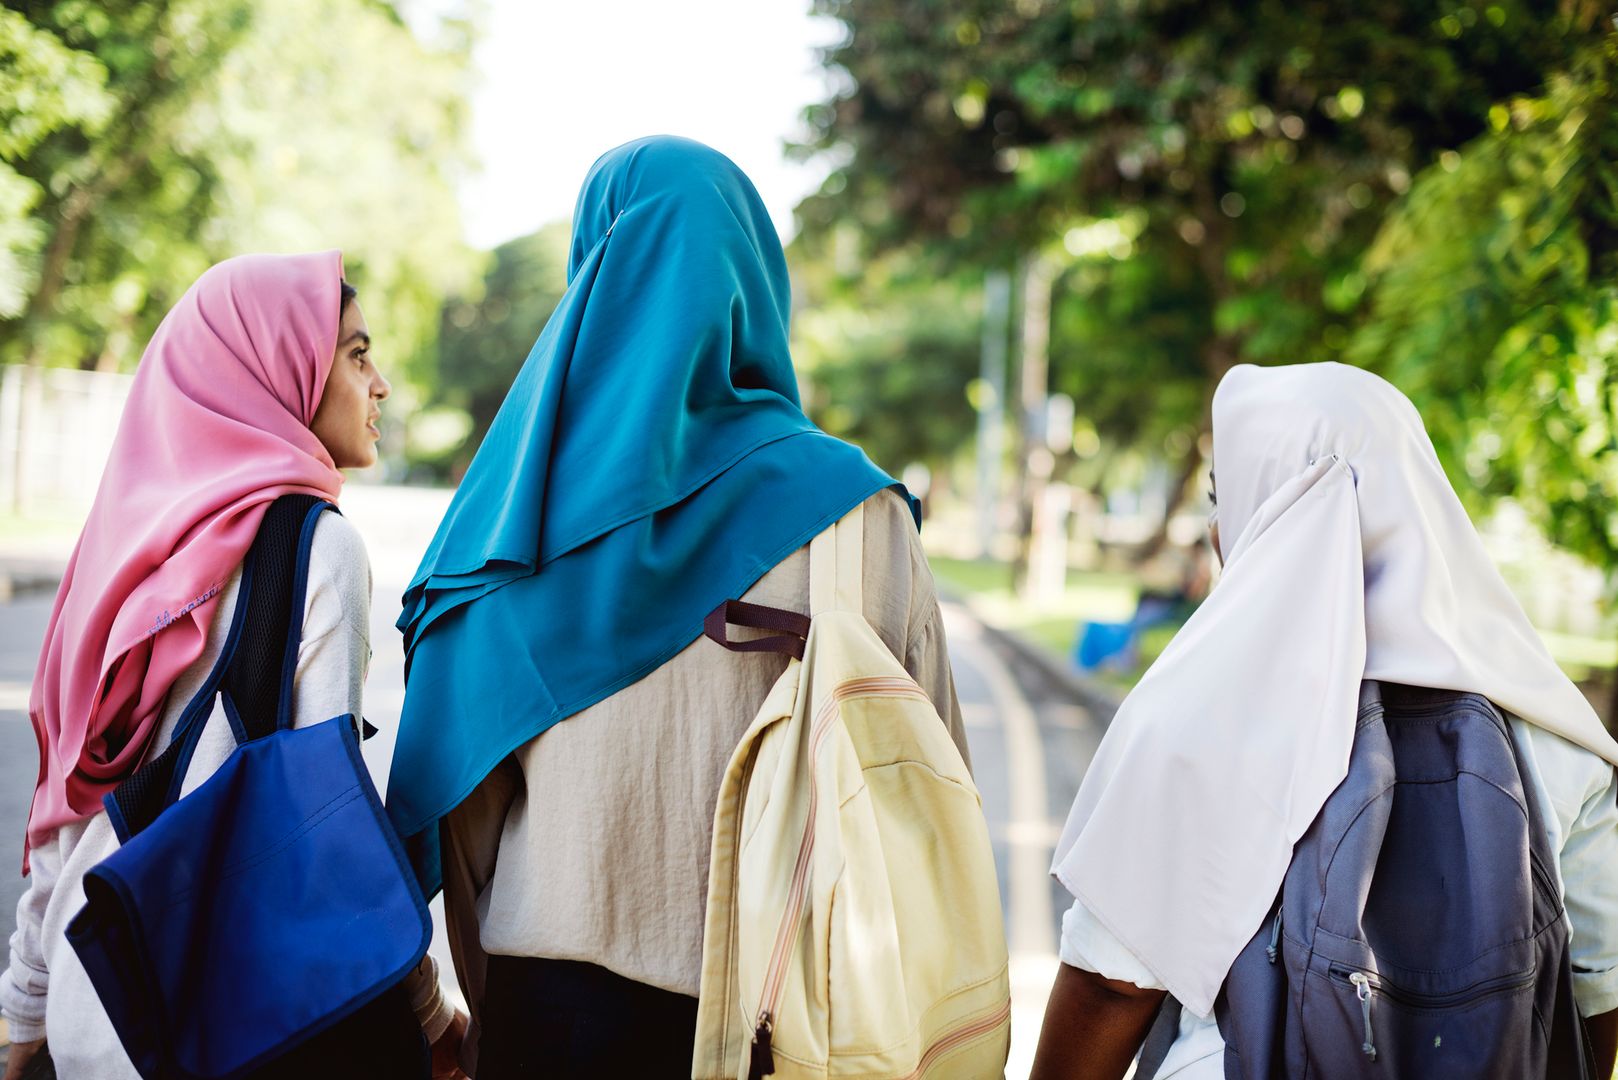 "Szkoła nie jest dla kobiet". Raport z kontroli w muzułmańskiej podstawówce szokuje